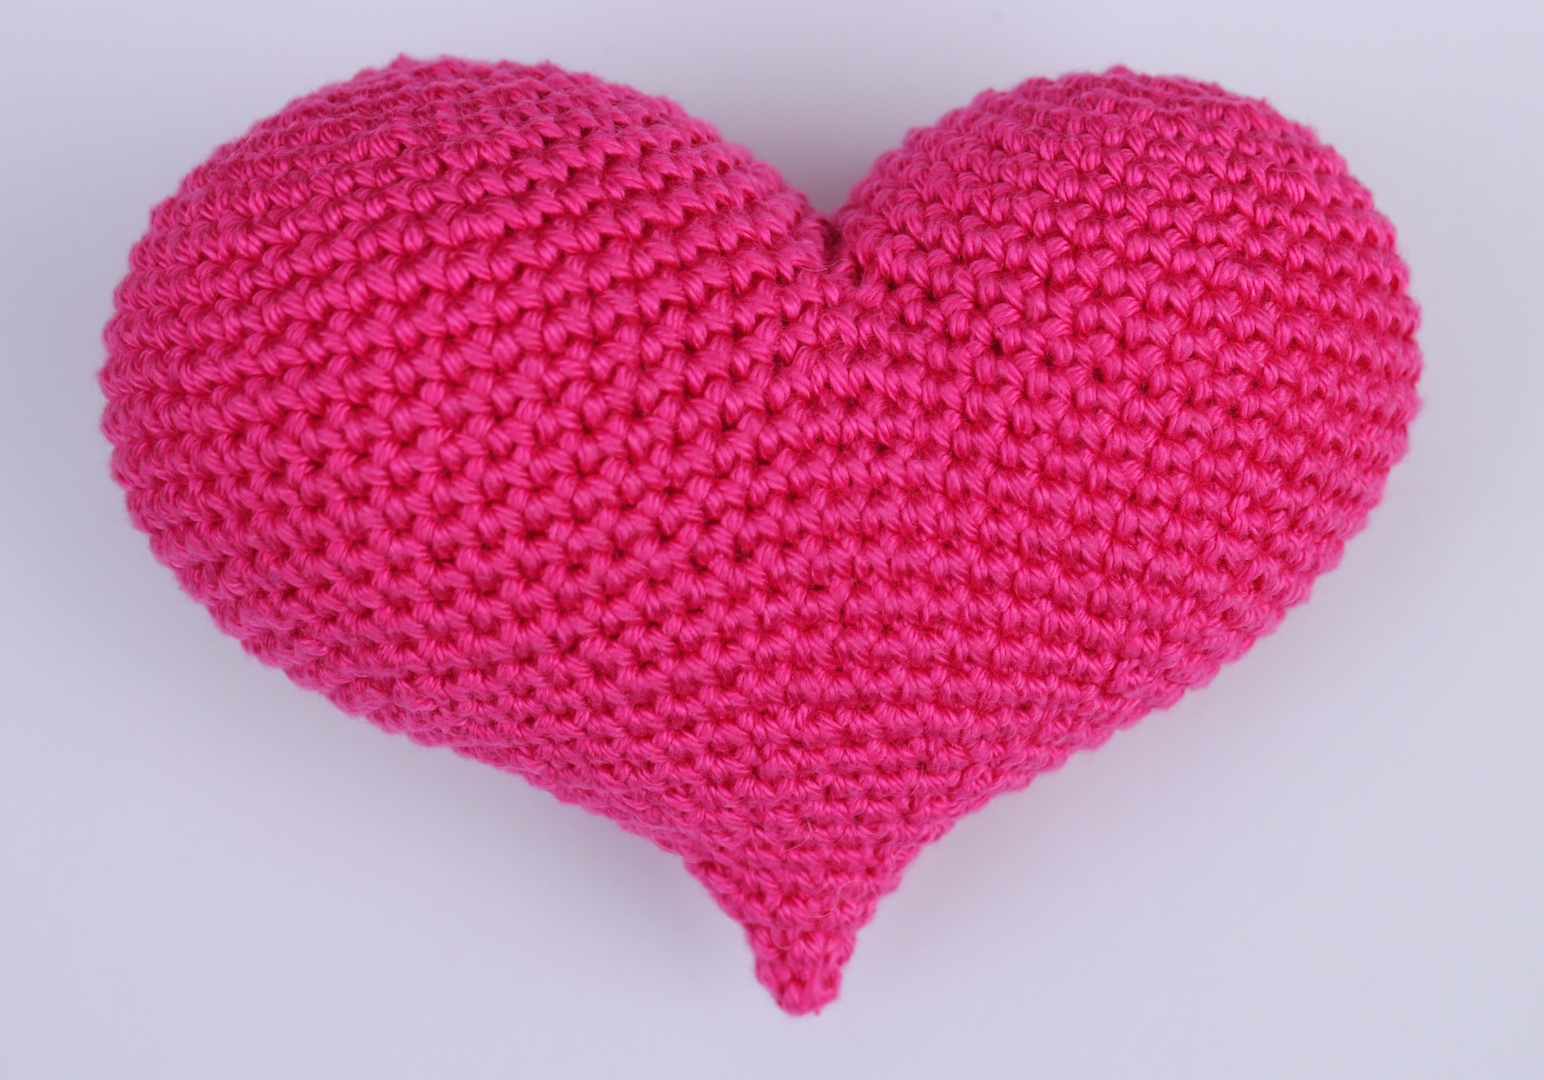 Wonderlijk Hilde haakt: 3D Amigurumi hart haken | Haken, Breien haken, Patronen CQ-25